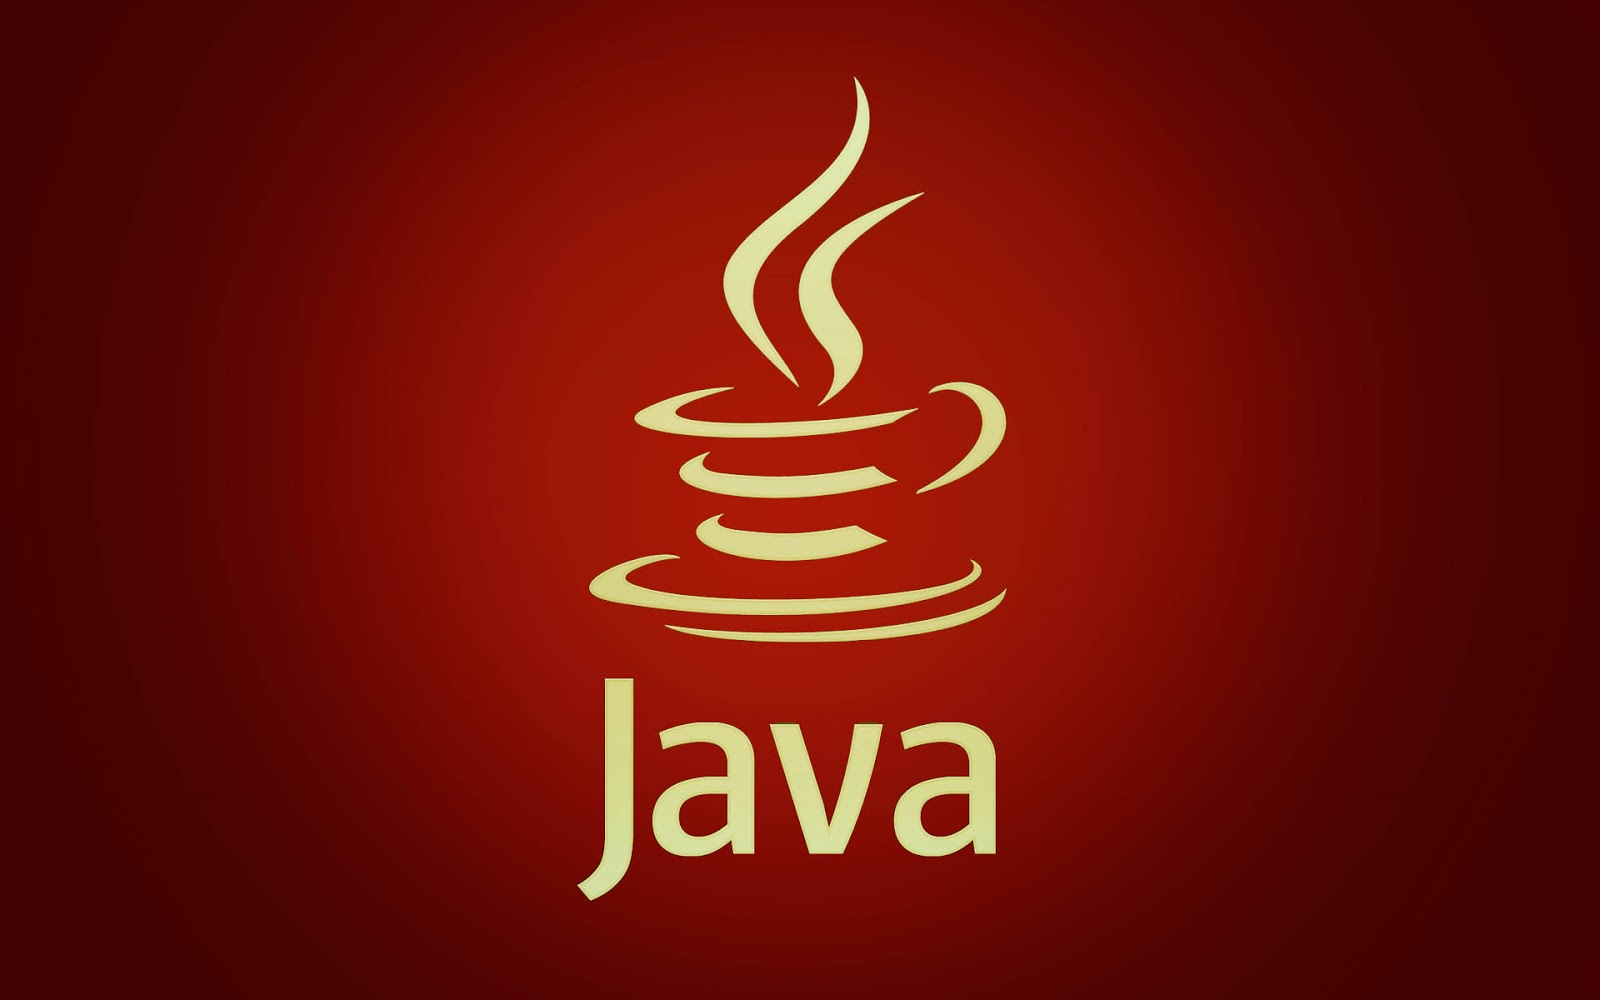 Java Logo Wallpaper - Java Logo - 1600x1000 Wallpaper 